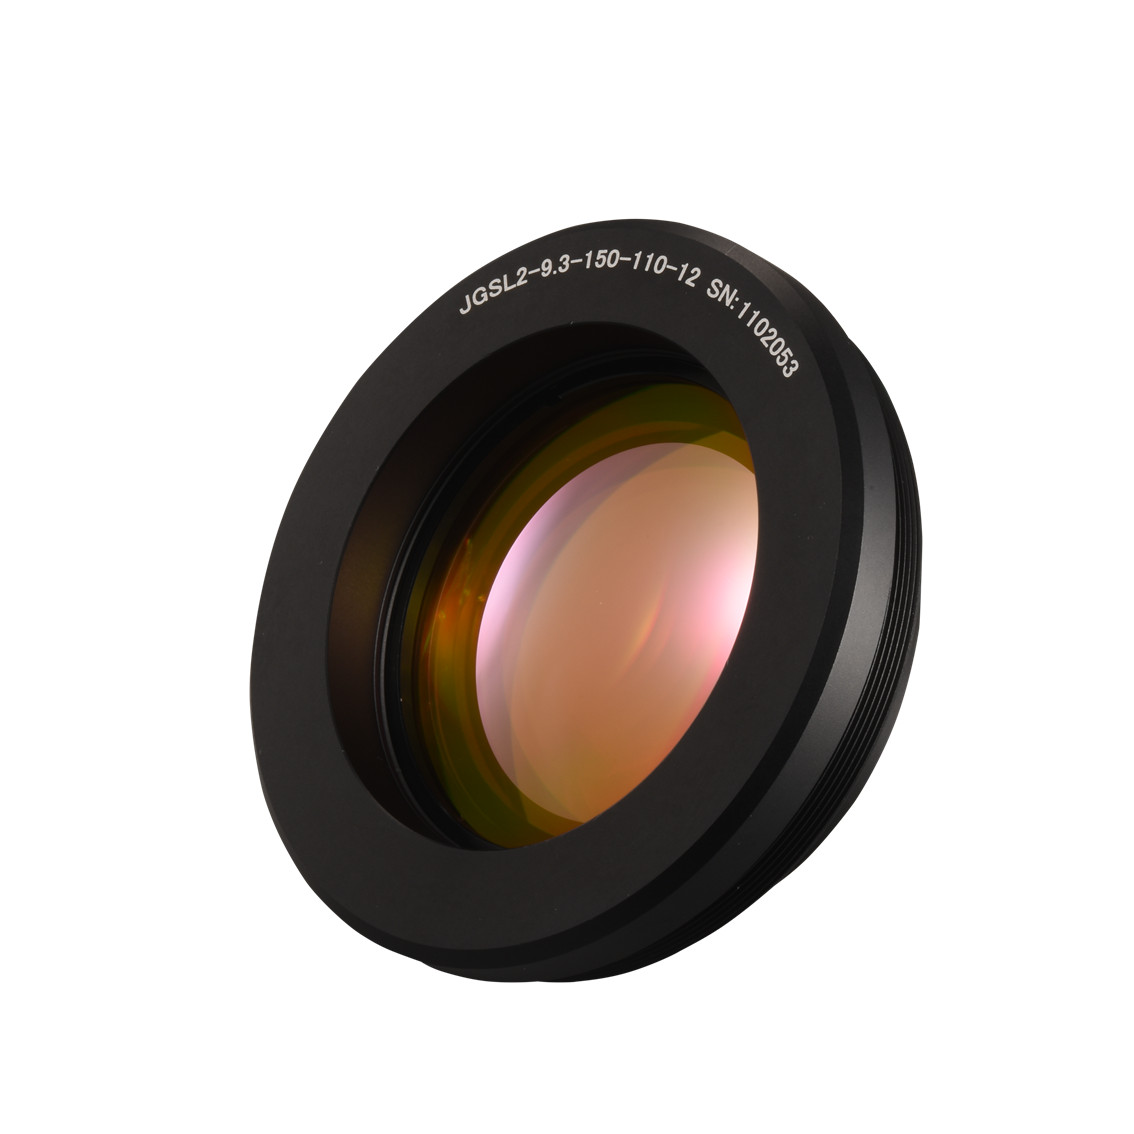 9.4um F-theta Lens